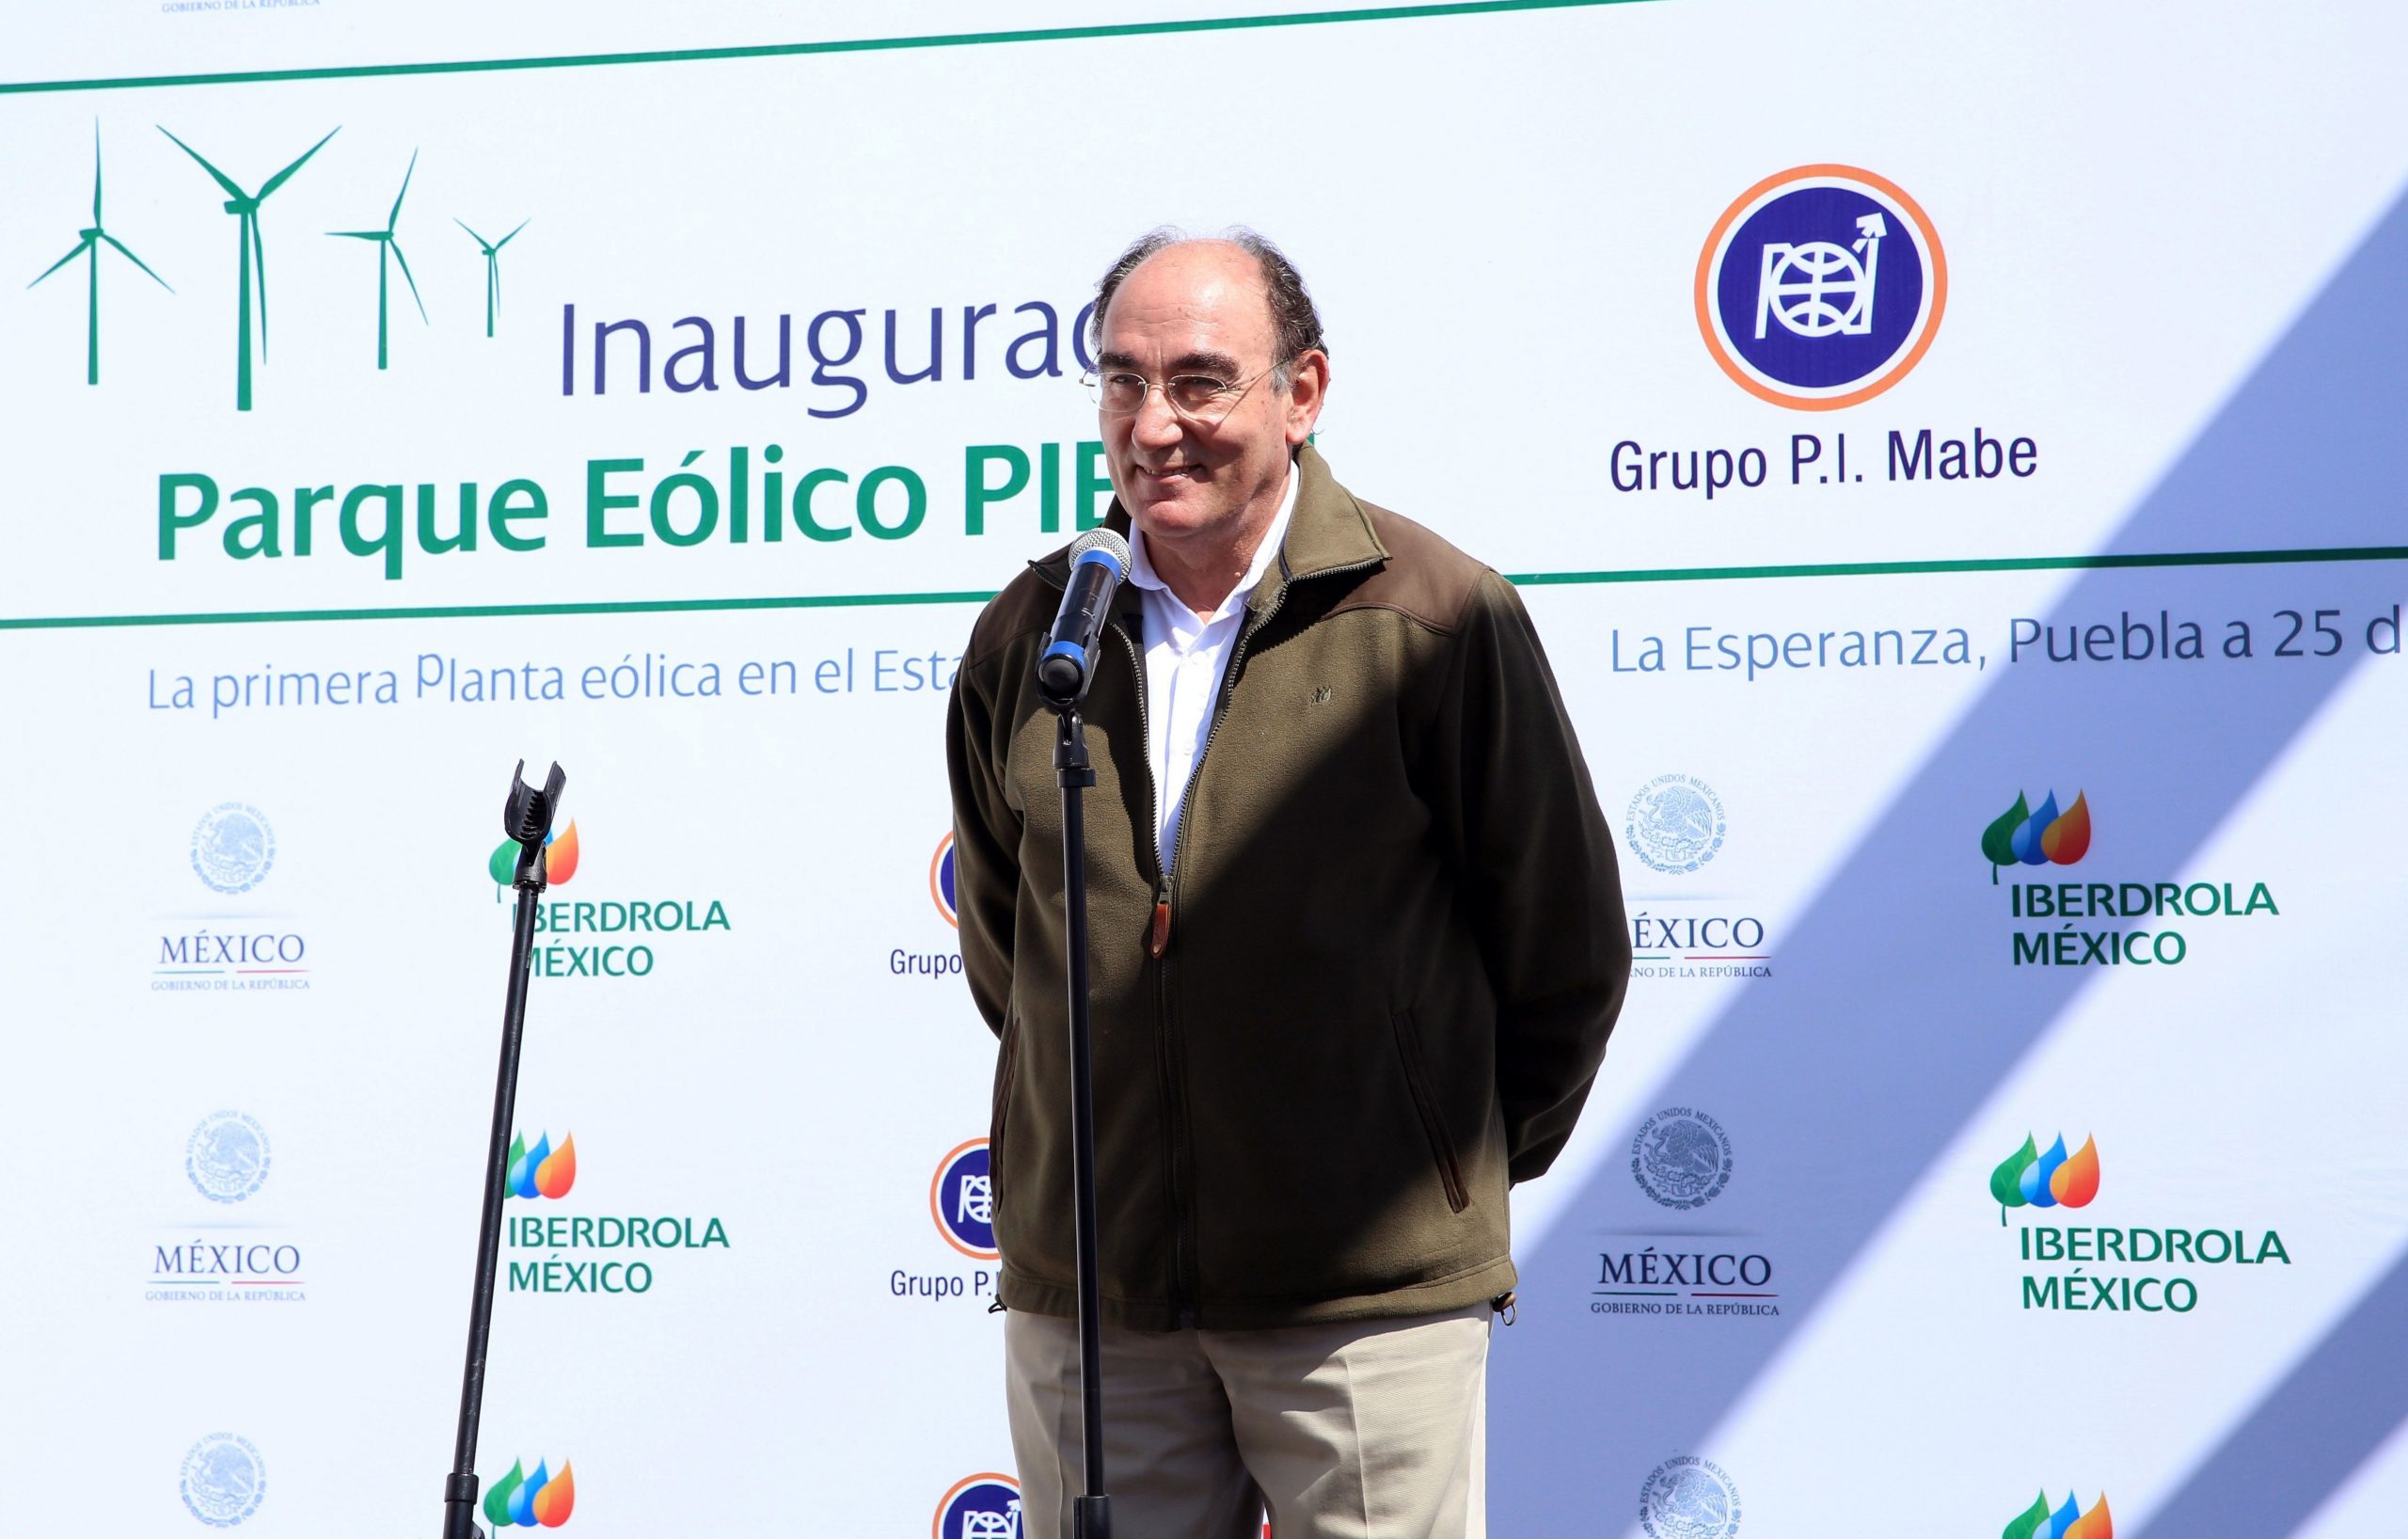 Mercados21 | Iberdrola supera los 365 MW eólicos en México con un nuevo parque